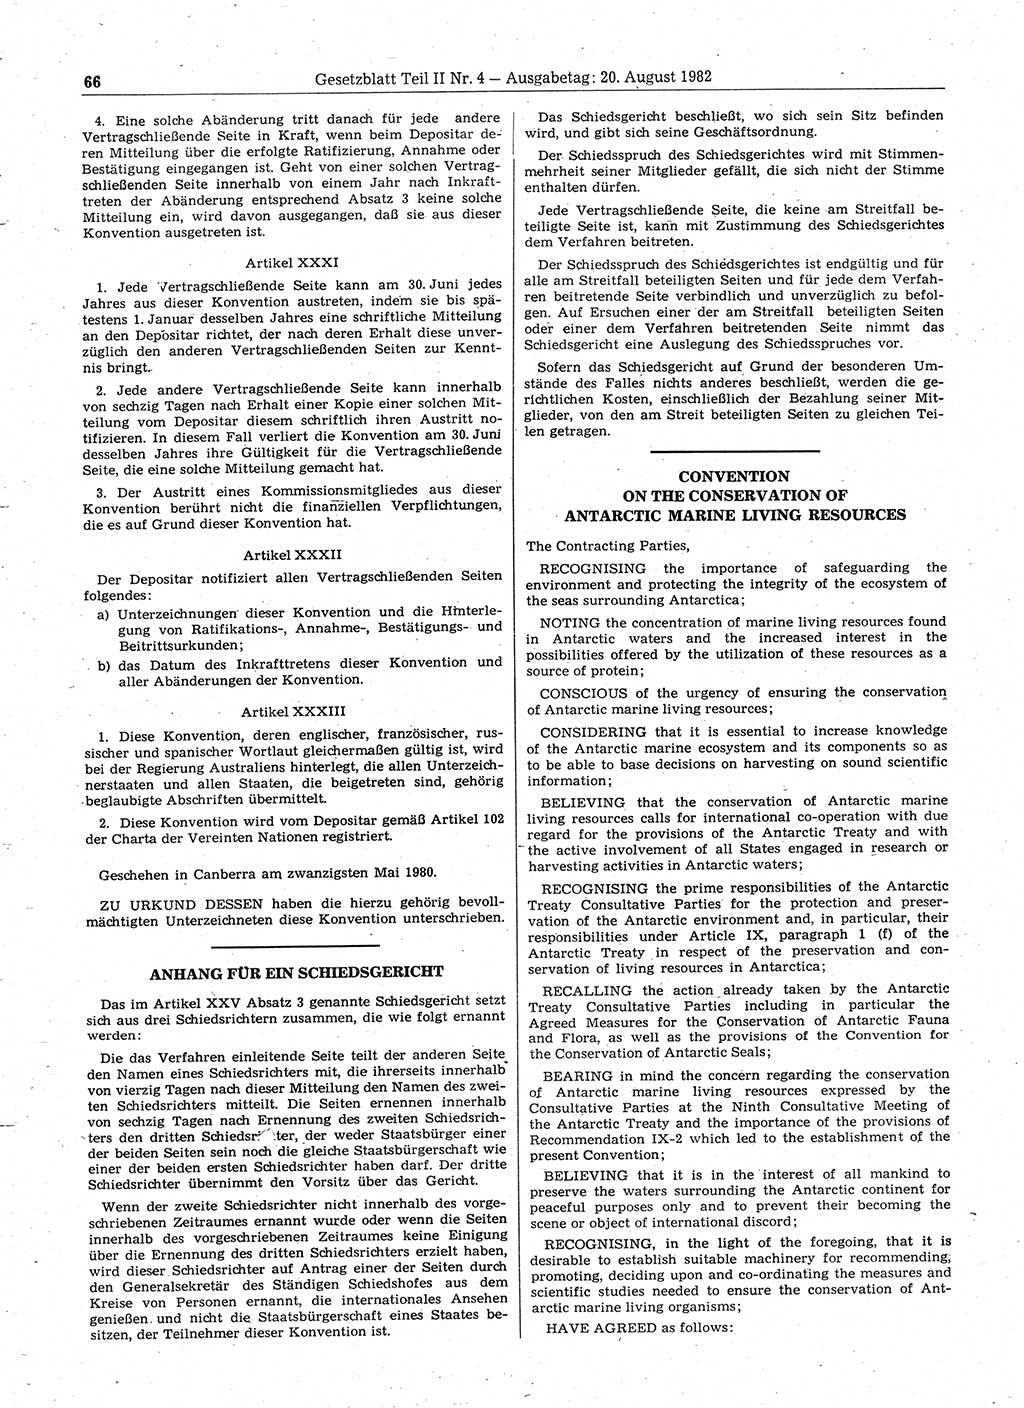 Gesetzblatt (GBl.) der Deutschen Demokratischen Republik (DDR) Teil ⅠⅠ 1982, Seite 66 (GBl. DDR ⅠⅠ 1982, S. 66)